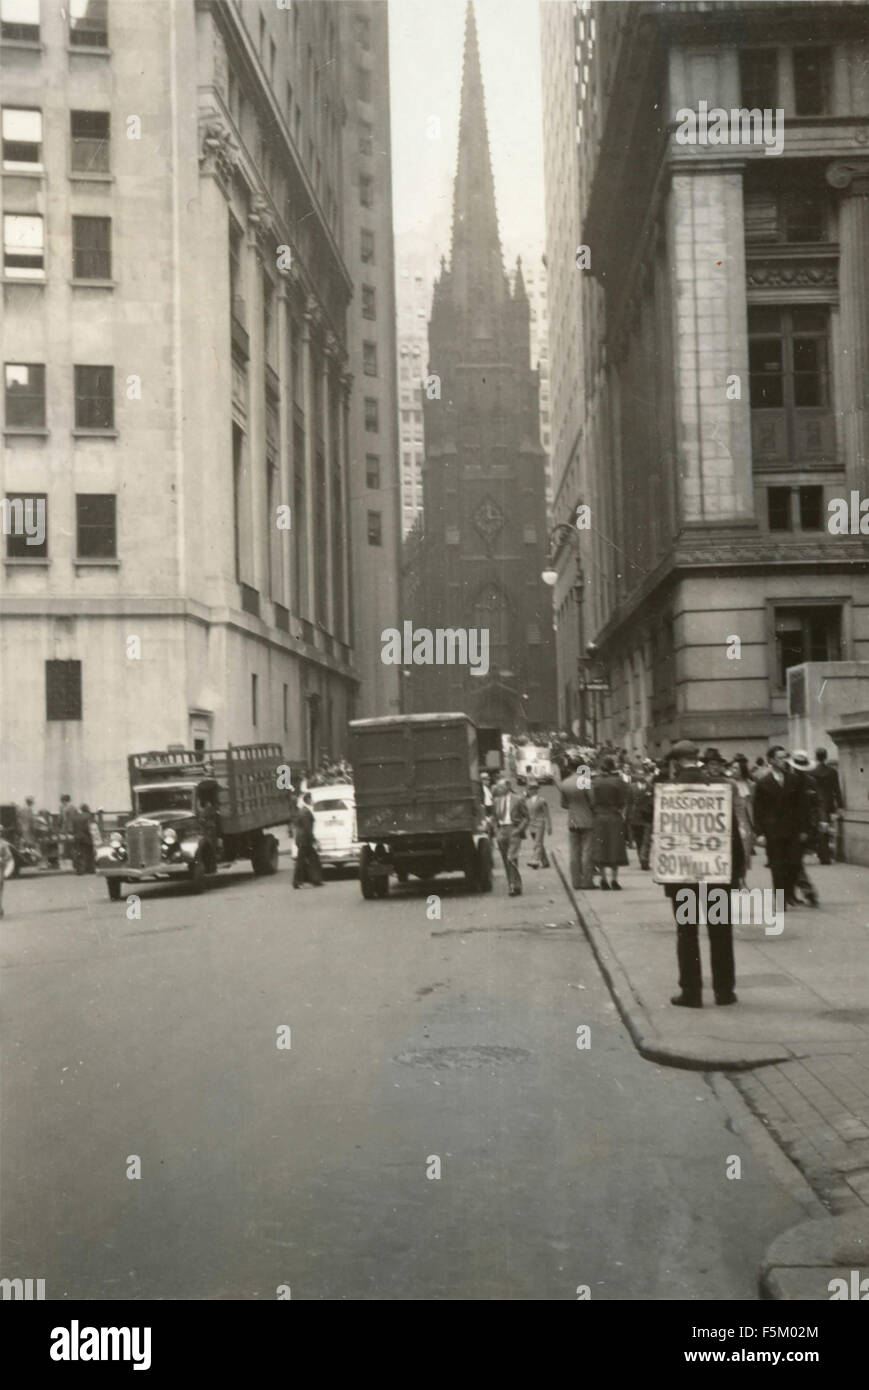 Un homme avec une pancarte publicitaire dans une rue du centre-ville, New York, USA Banque D'Images